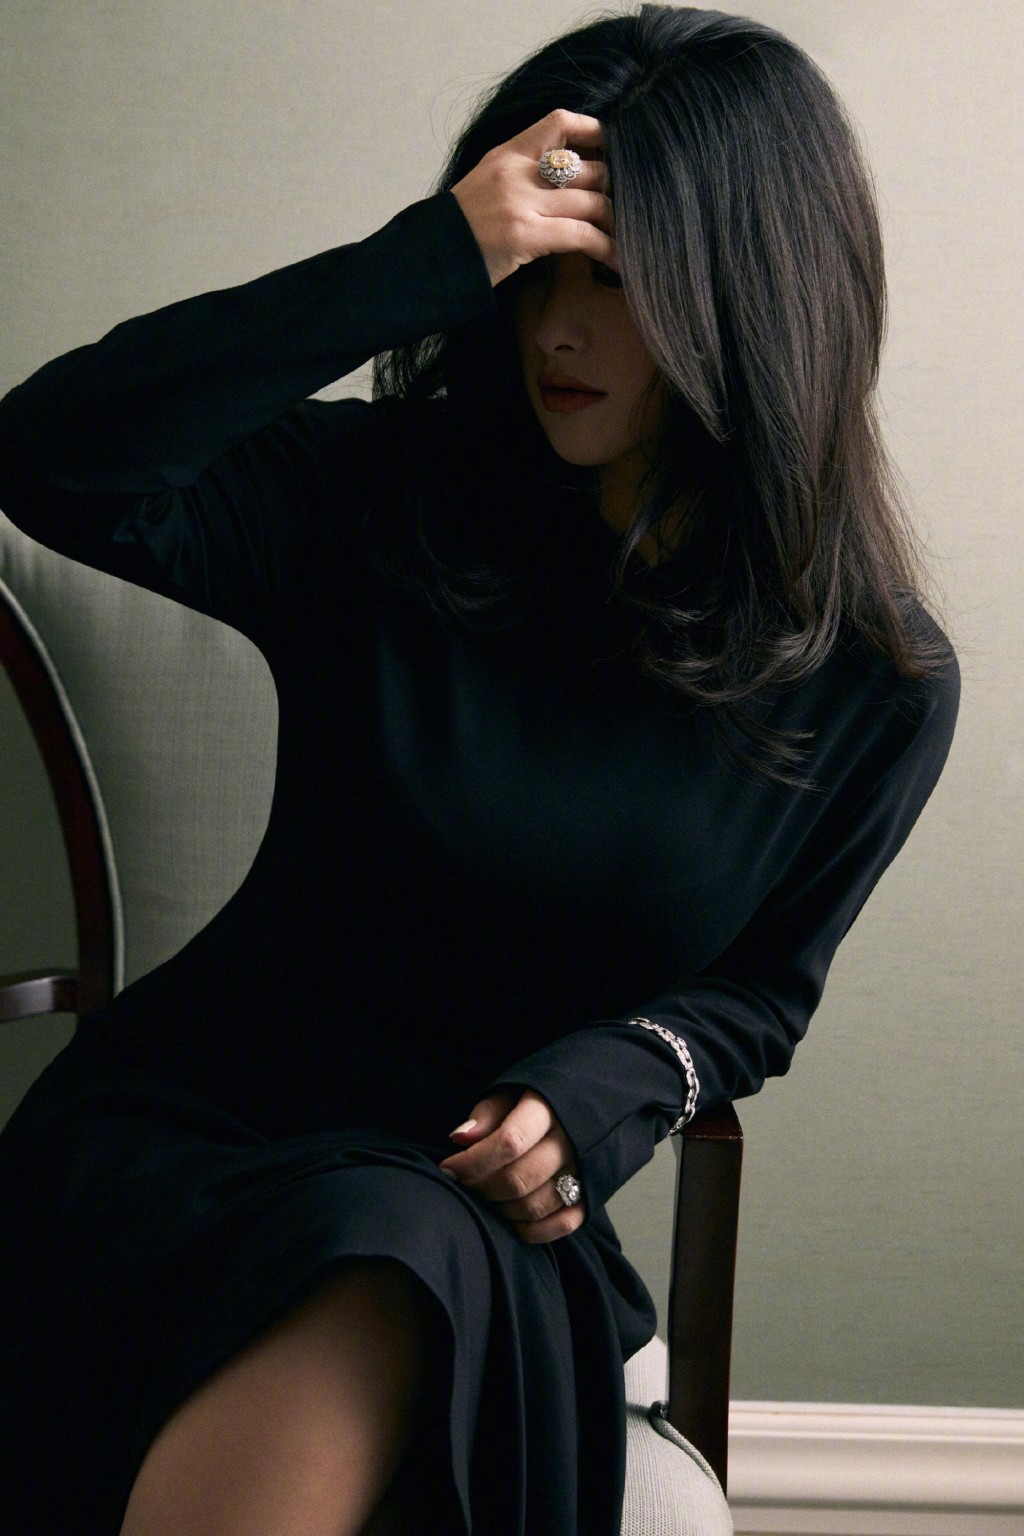 朱珠黑色长裙慵懒卷发妩媚气质写真图片